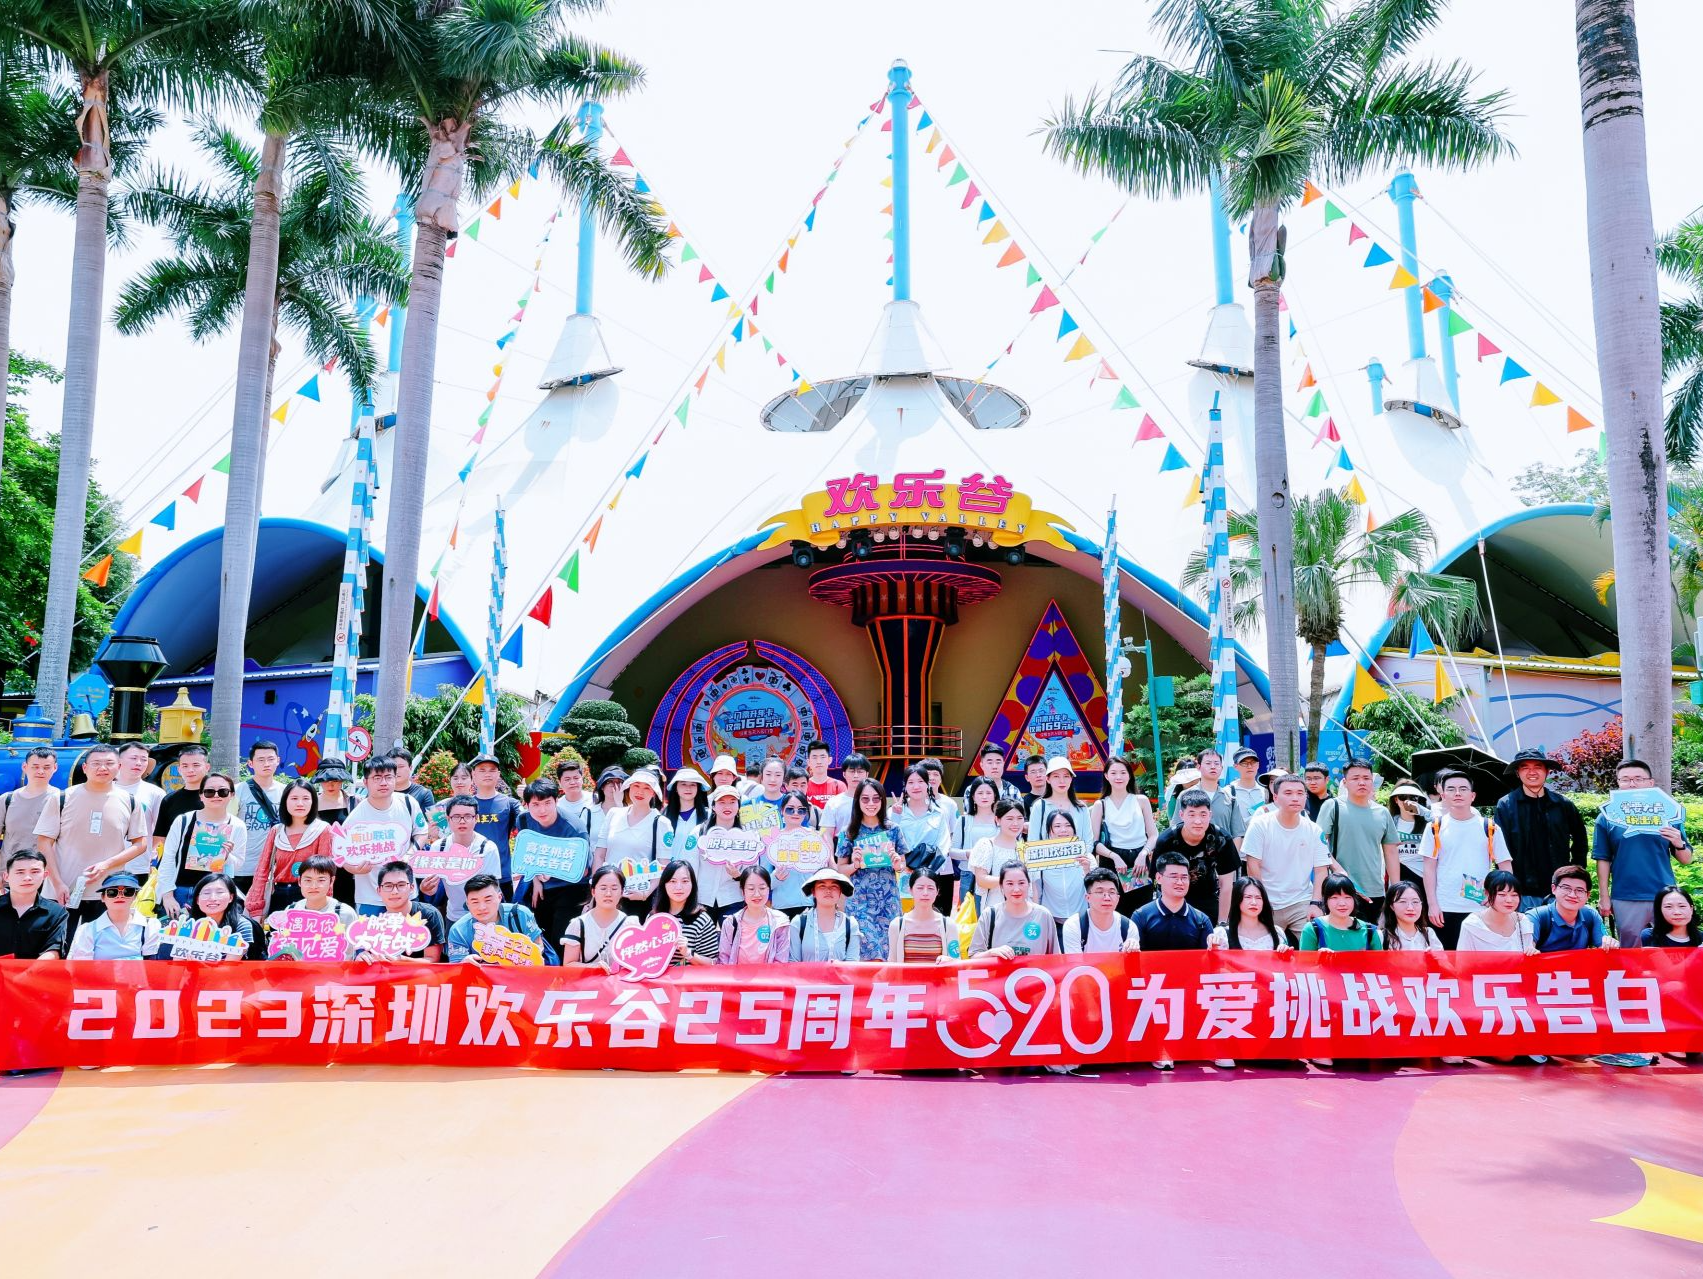 深圳欢乐谷举办520“为爱挑战 欢乐告白”活动，百位单身青年高空挑战